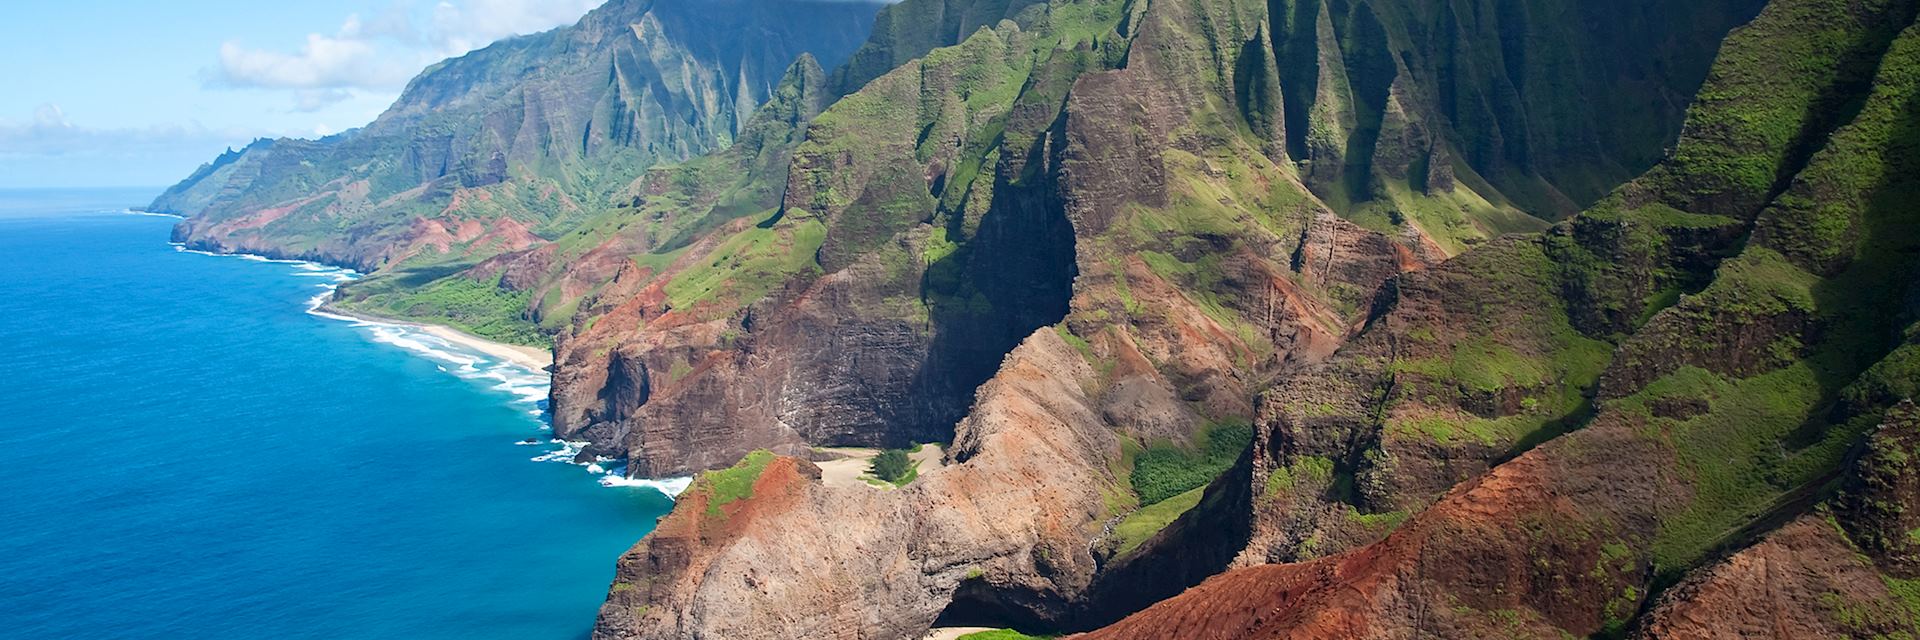 Na Pali Cliffs, Kauai